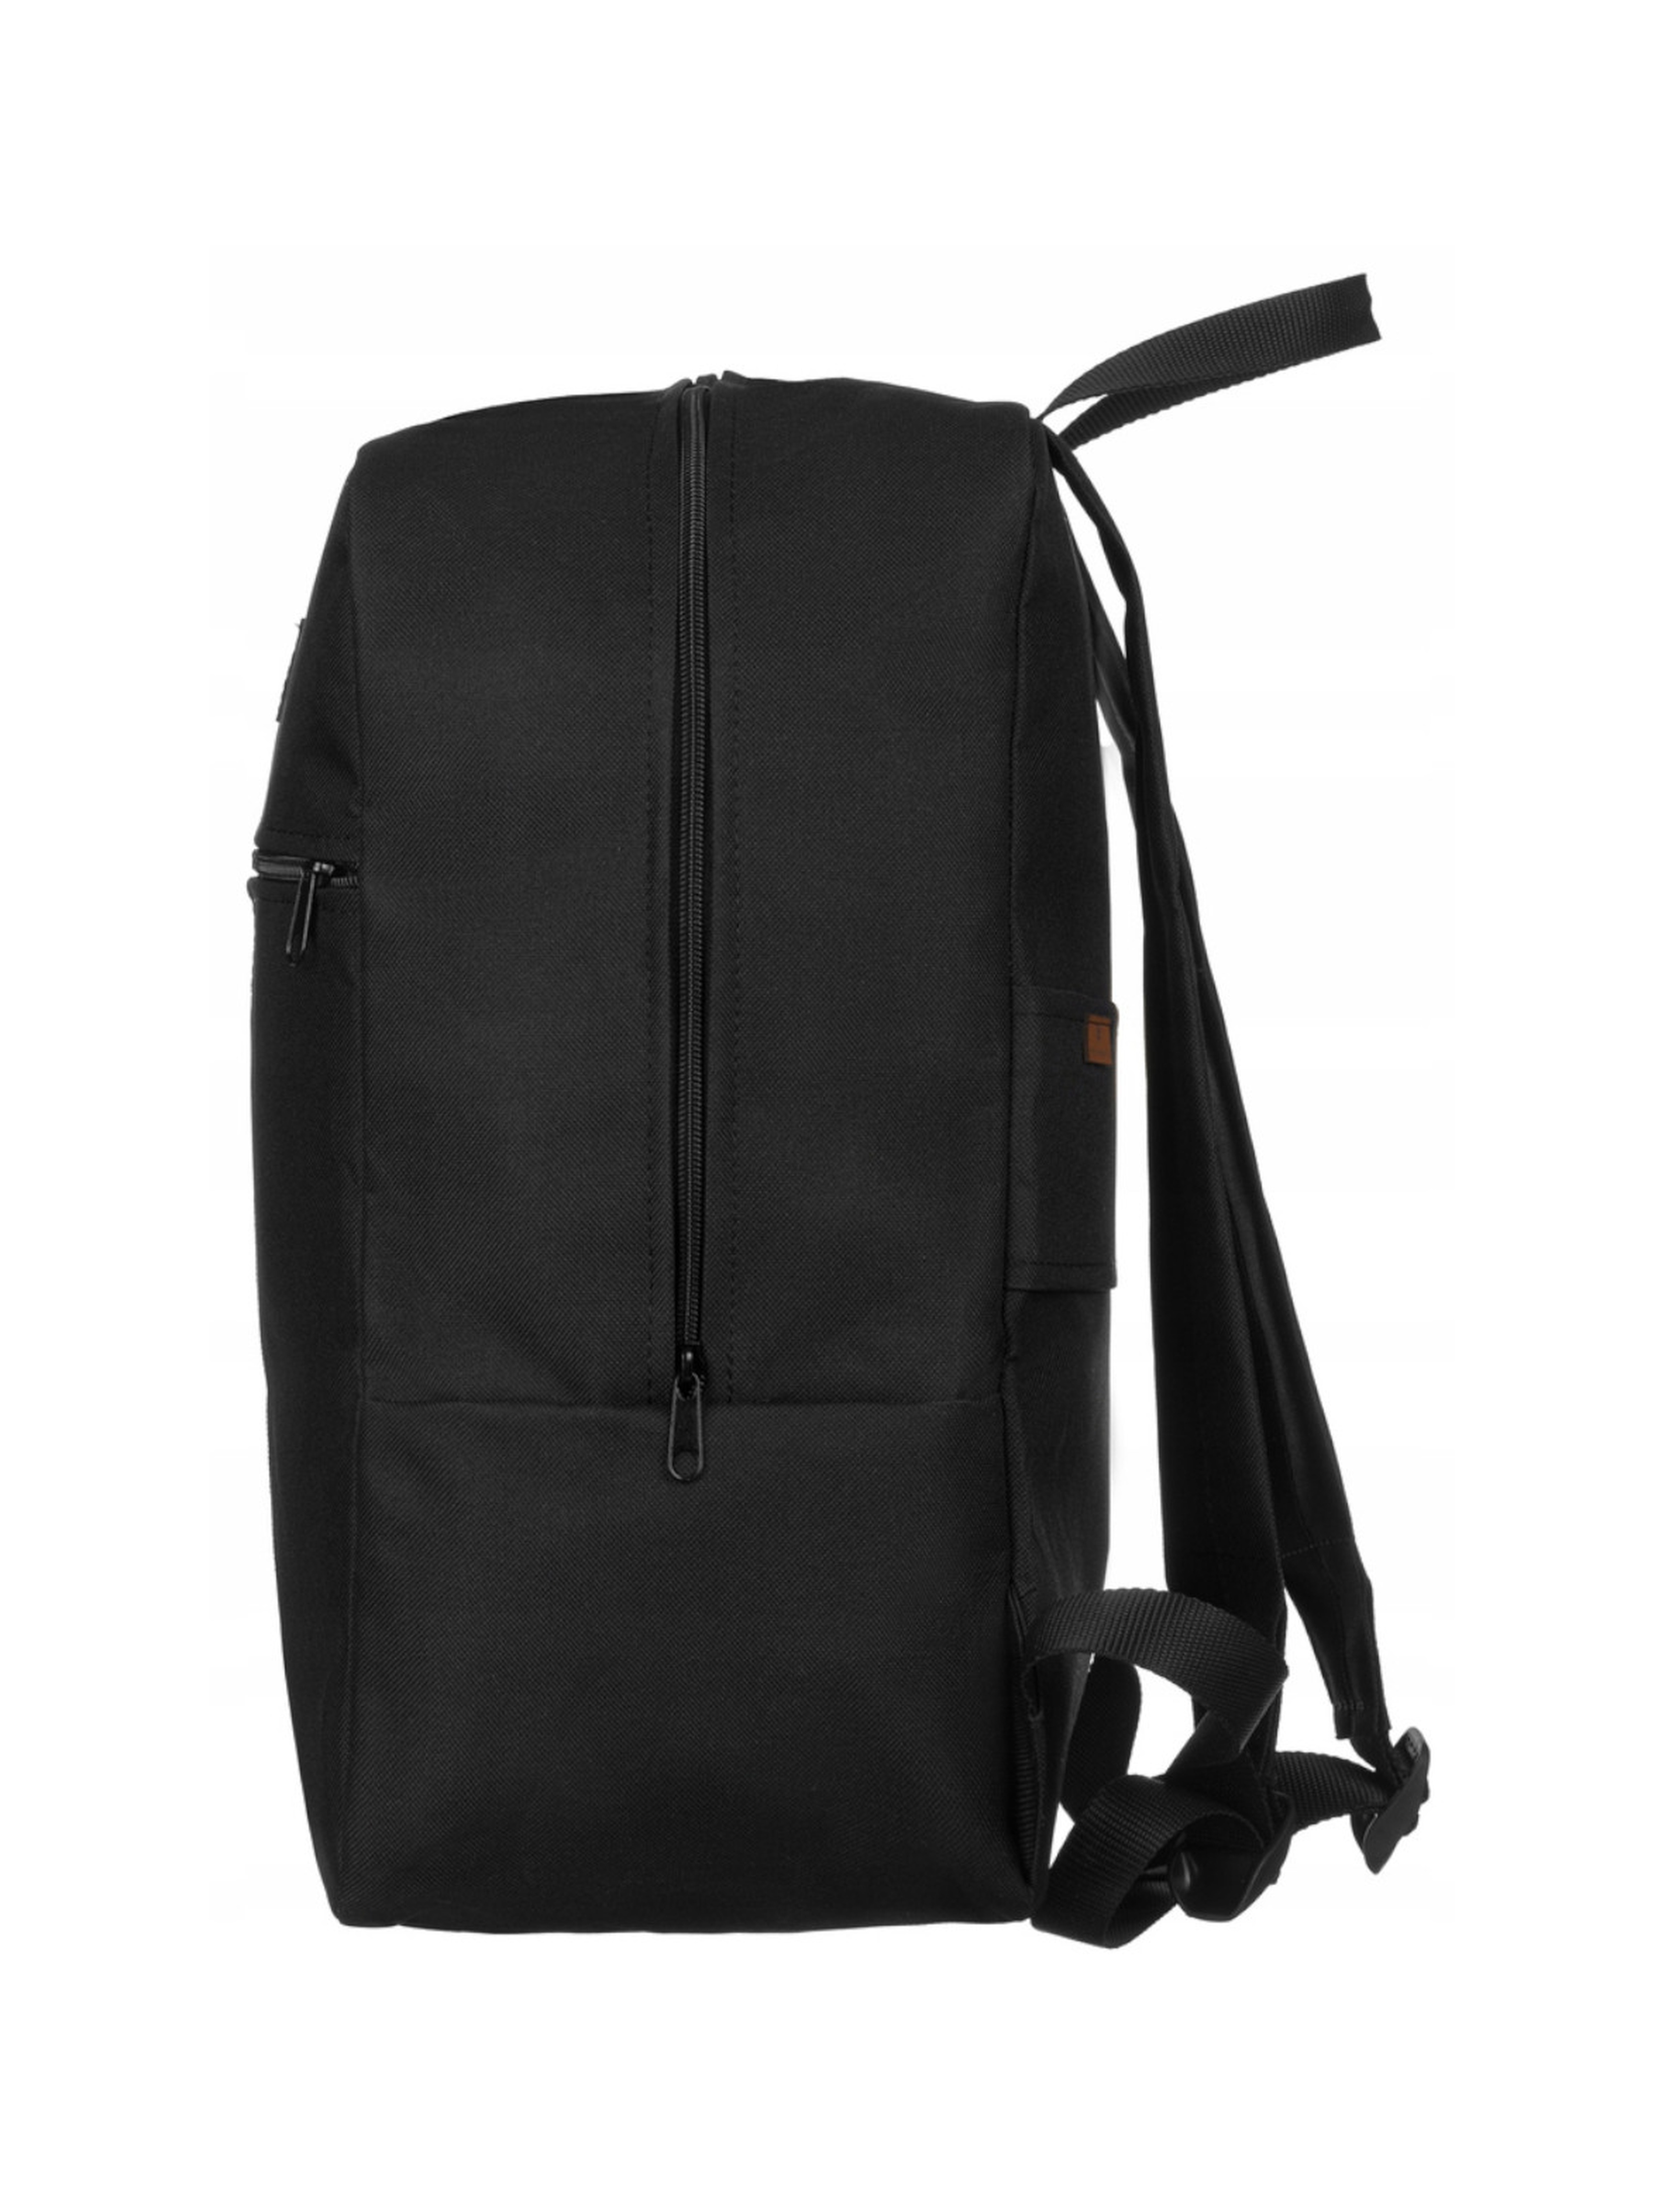 Plecak podróżny spełniający wymogi podręcznego bagażu - Peterson